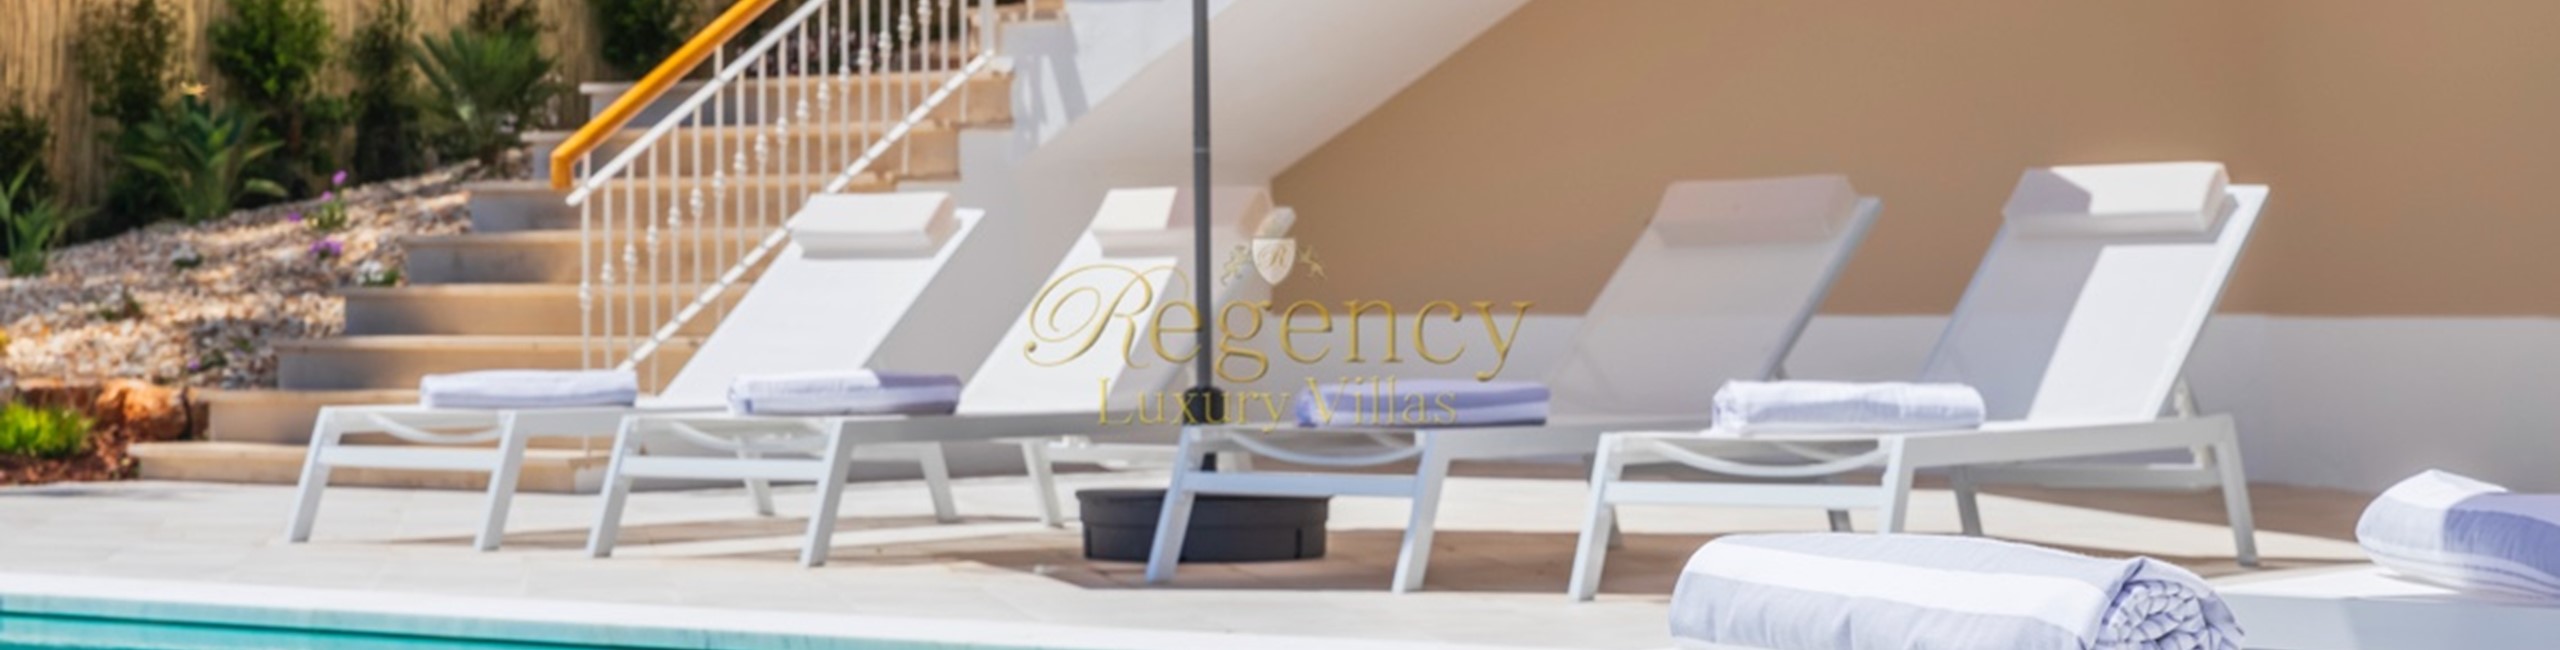 4 Bedroom Luxury Villas To Rent Quinta Do Lago Algarve Portugal